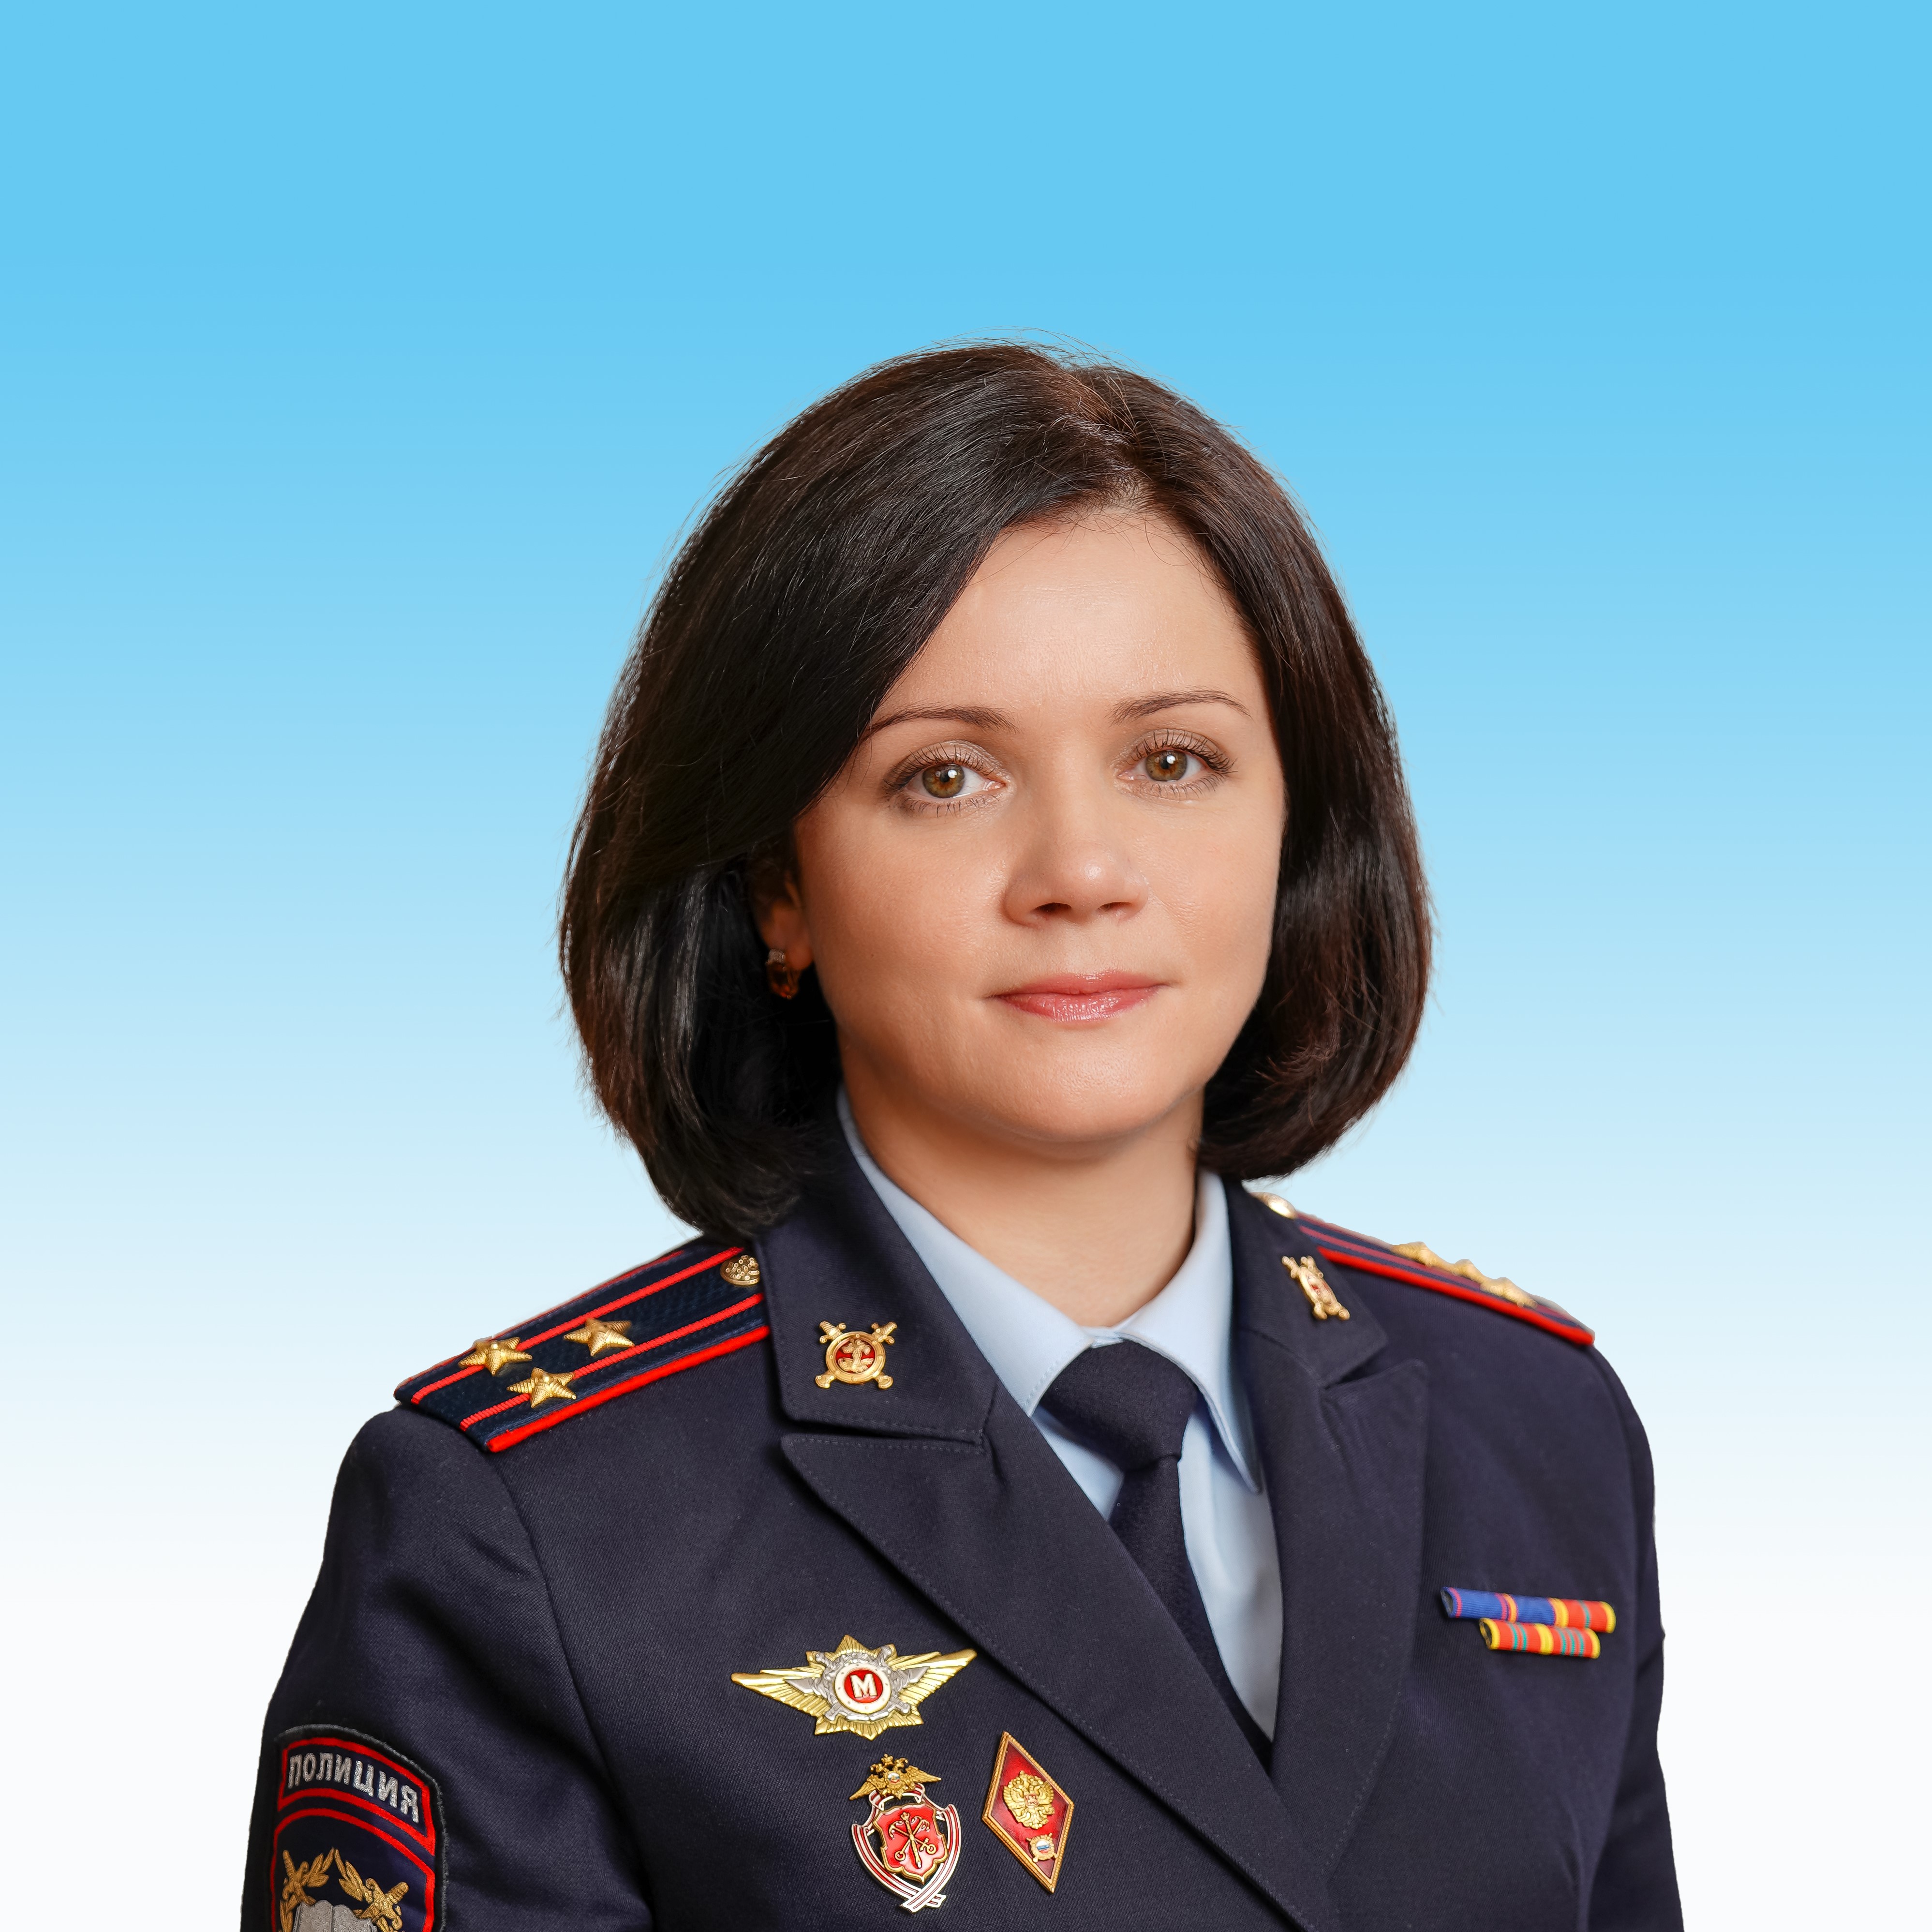                         Mironkina Oksana
            